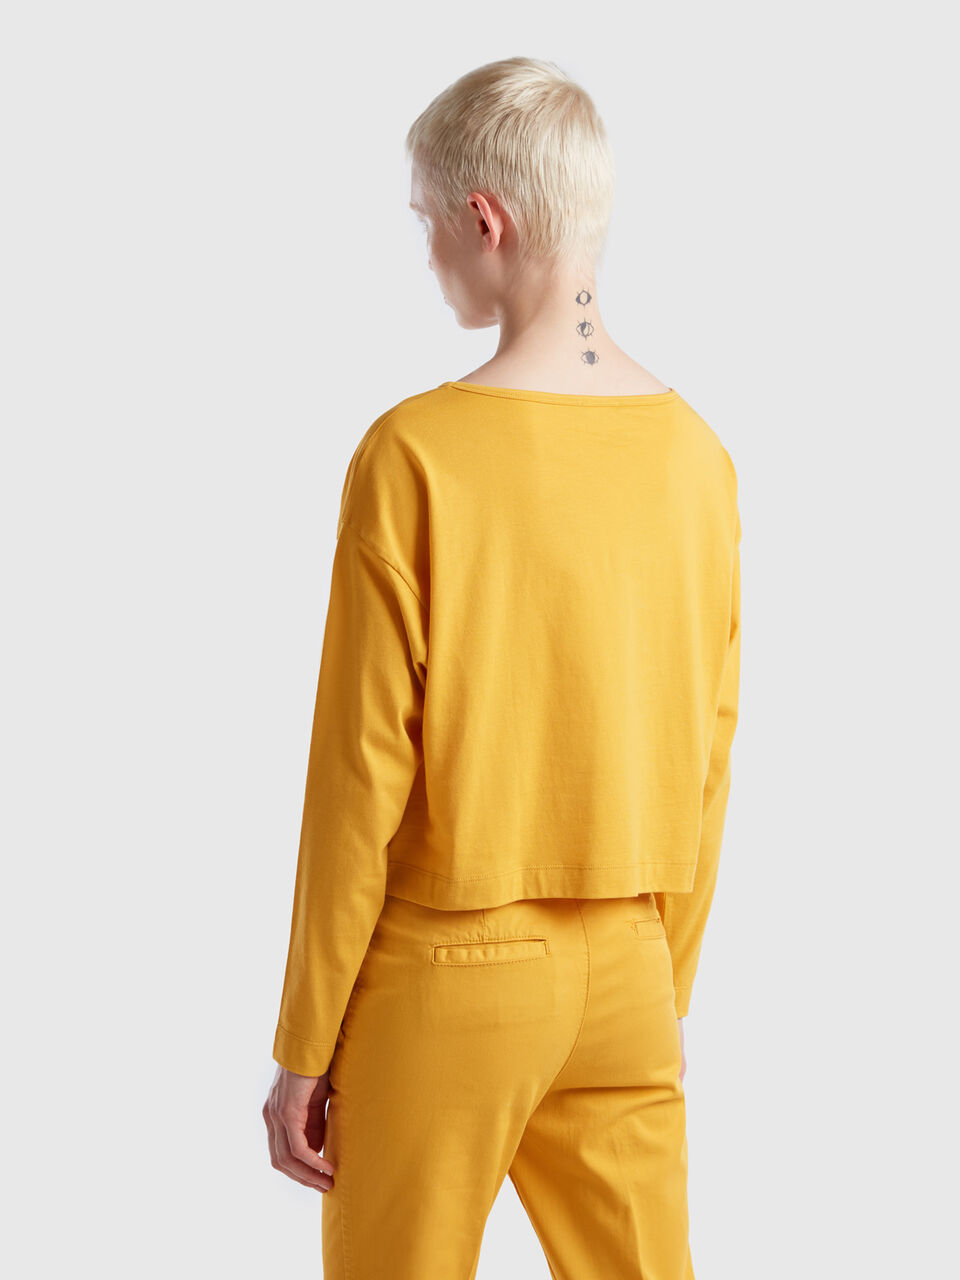 cotton - ochre Yellow | fiber t-shirt Benetton Yellow long